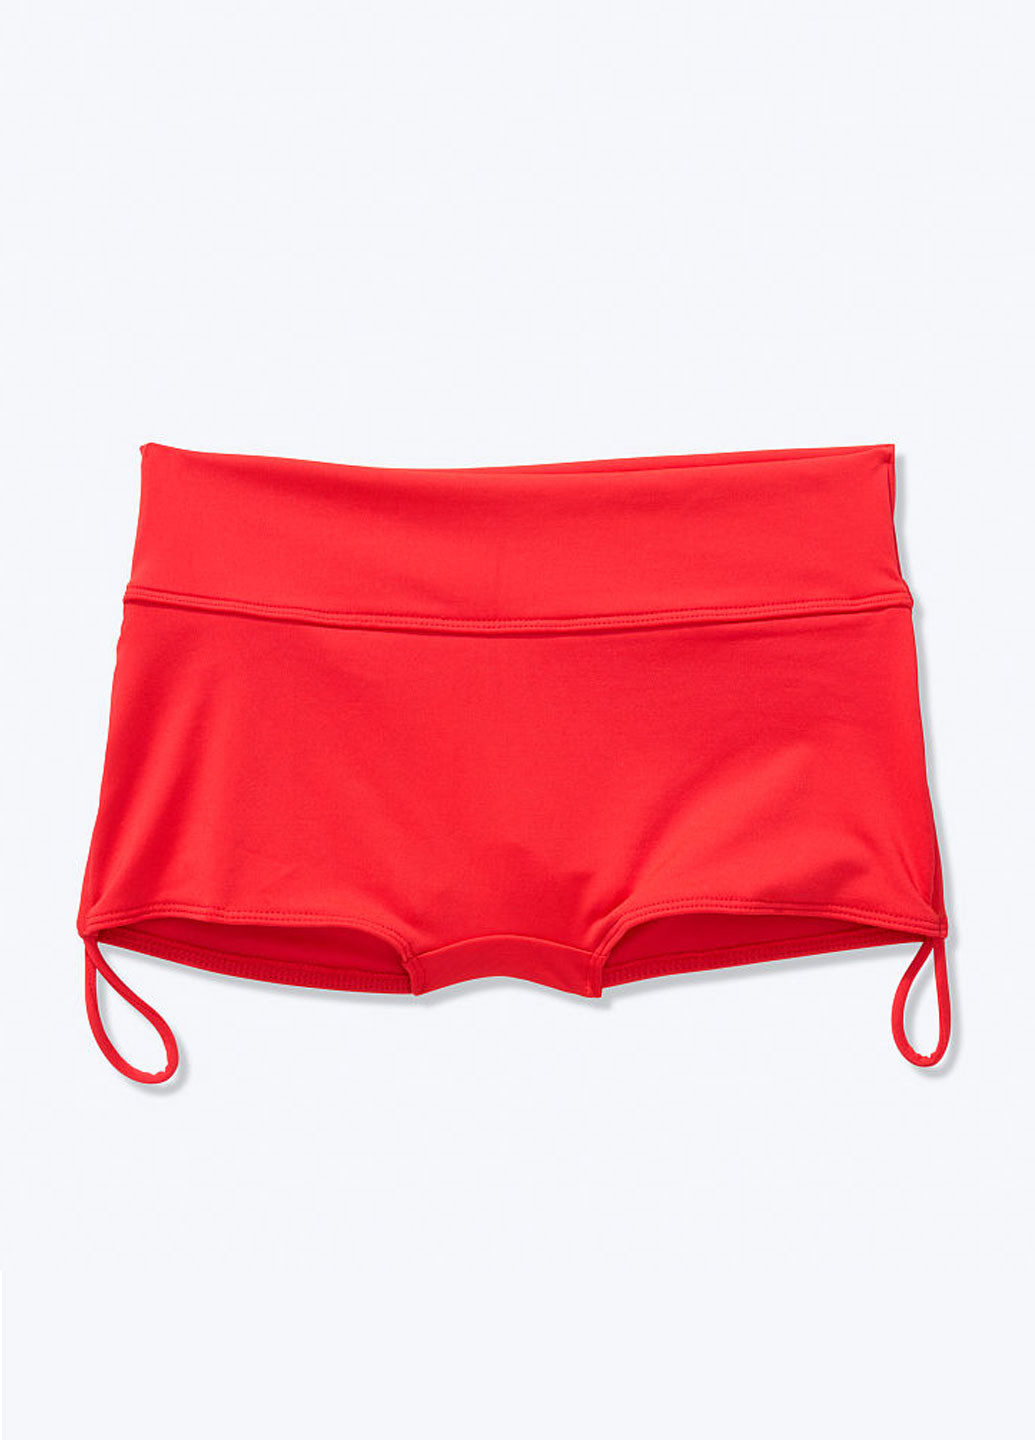 Червоний літній купальник (ліф, трусики) бікіні Victoria's Secret